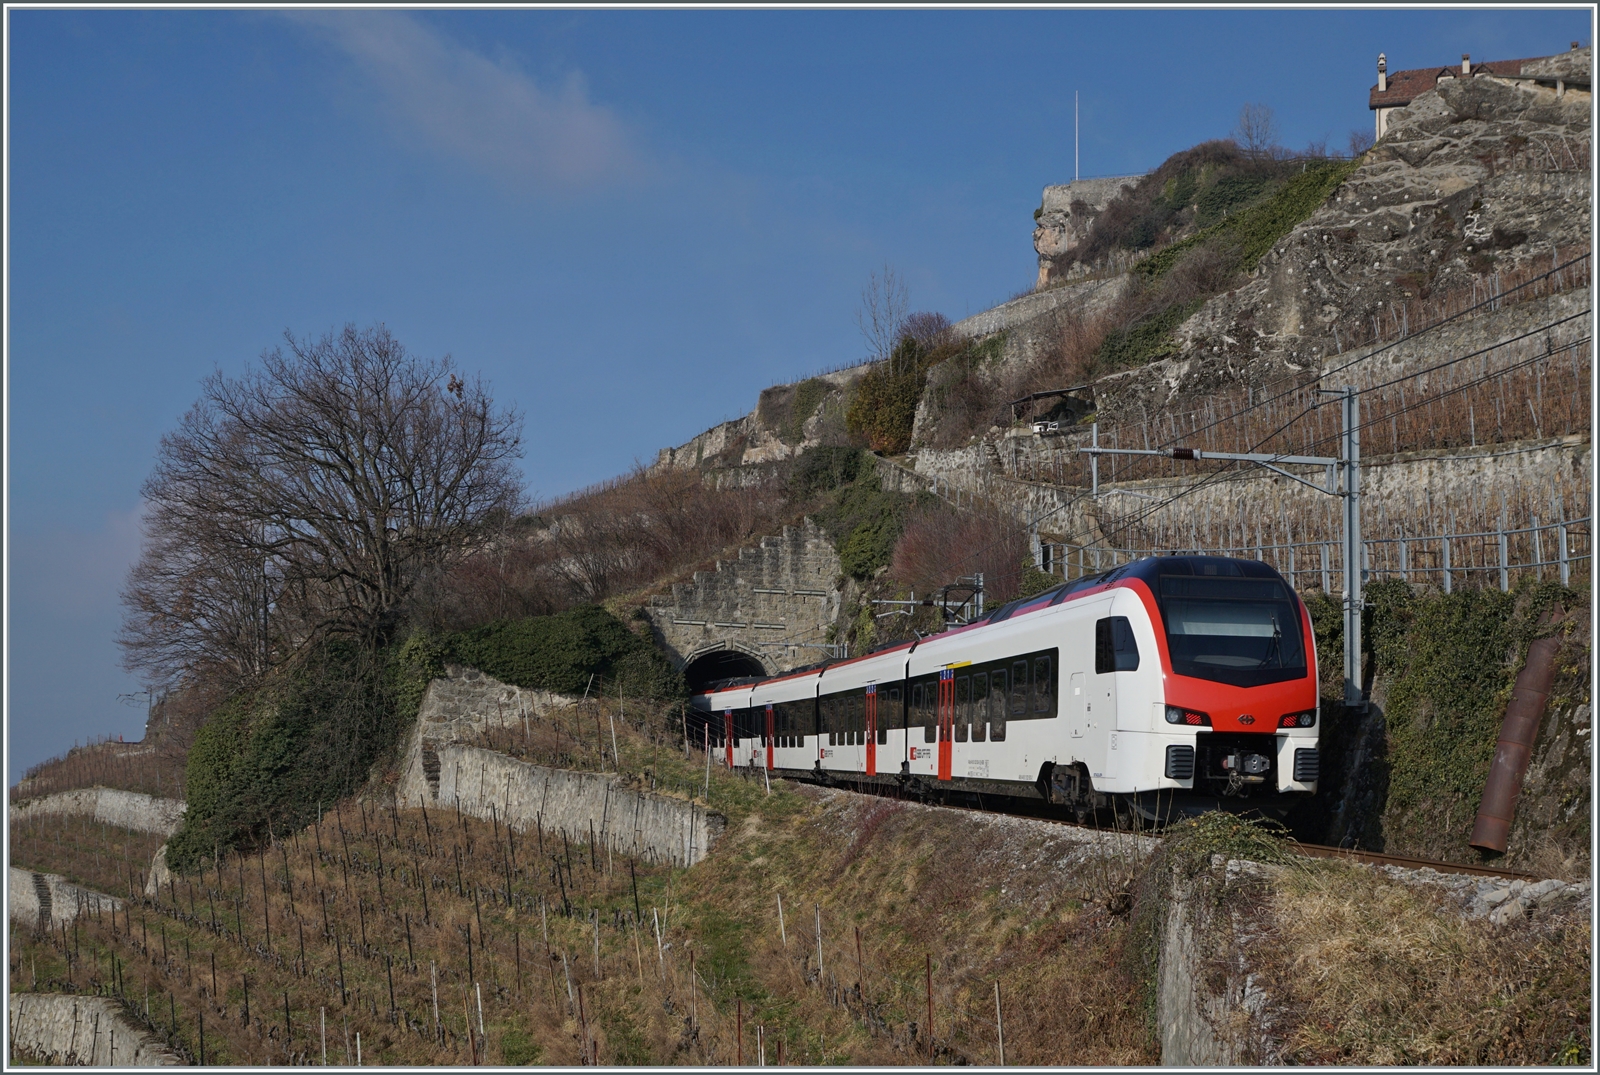 Ein SBB RABe 523.5 (Fernverkehrsvariante) ist als Regionalzug auf der  Train des Vignes Strecke unterwegs.

11. Feb. 2023